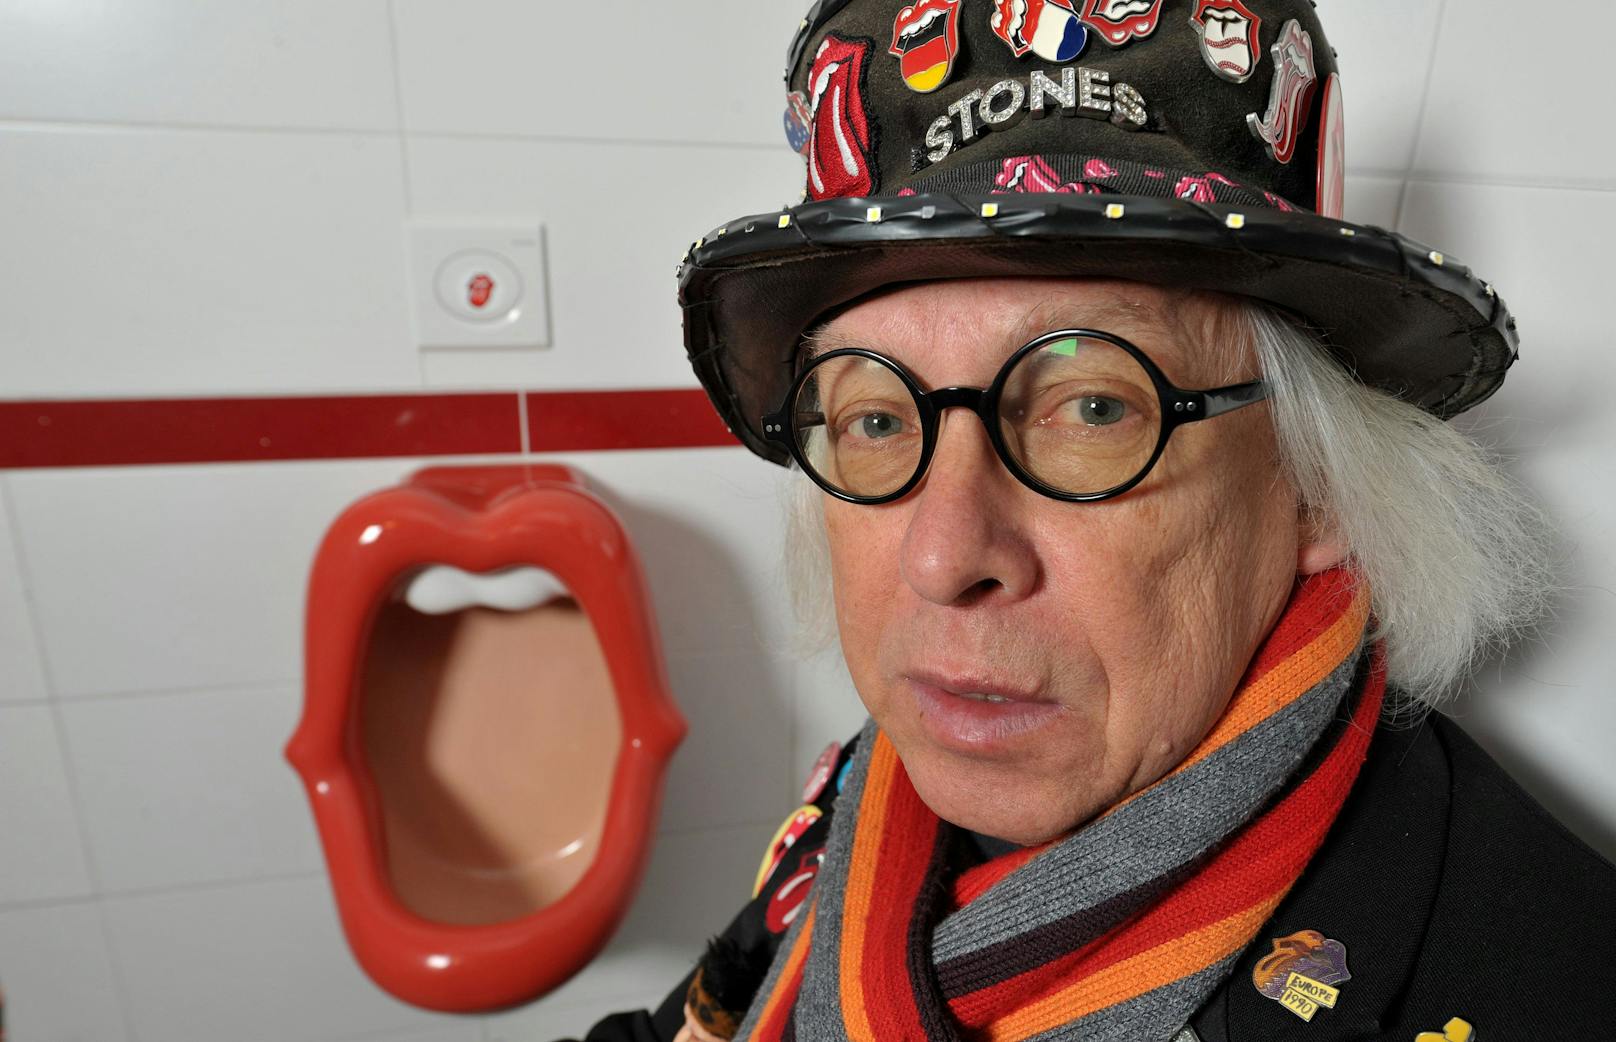 Der niederländische Künstler entwickelte aus dem berühmten Rolling Stones Logo Urinale.